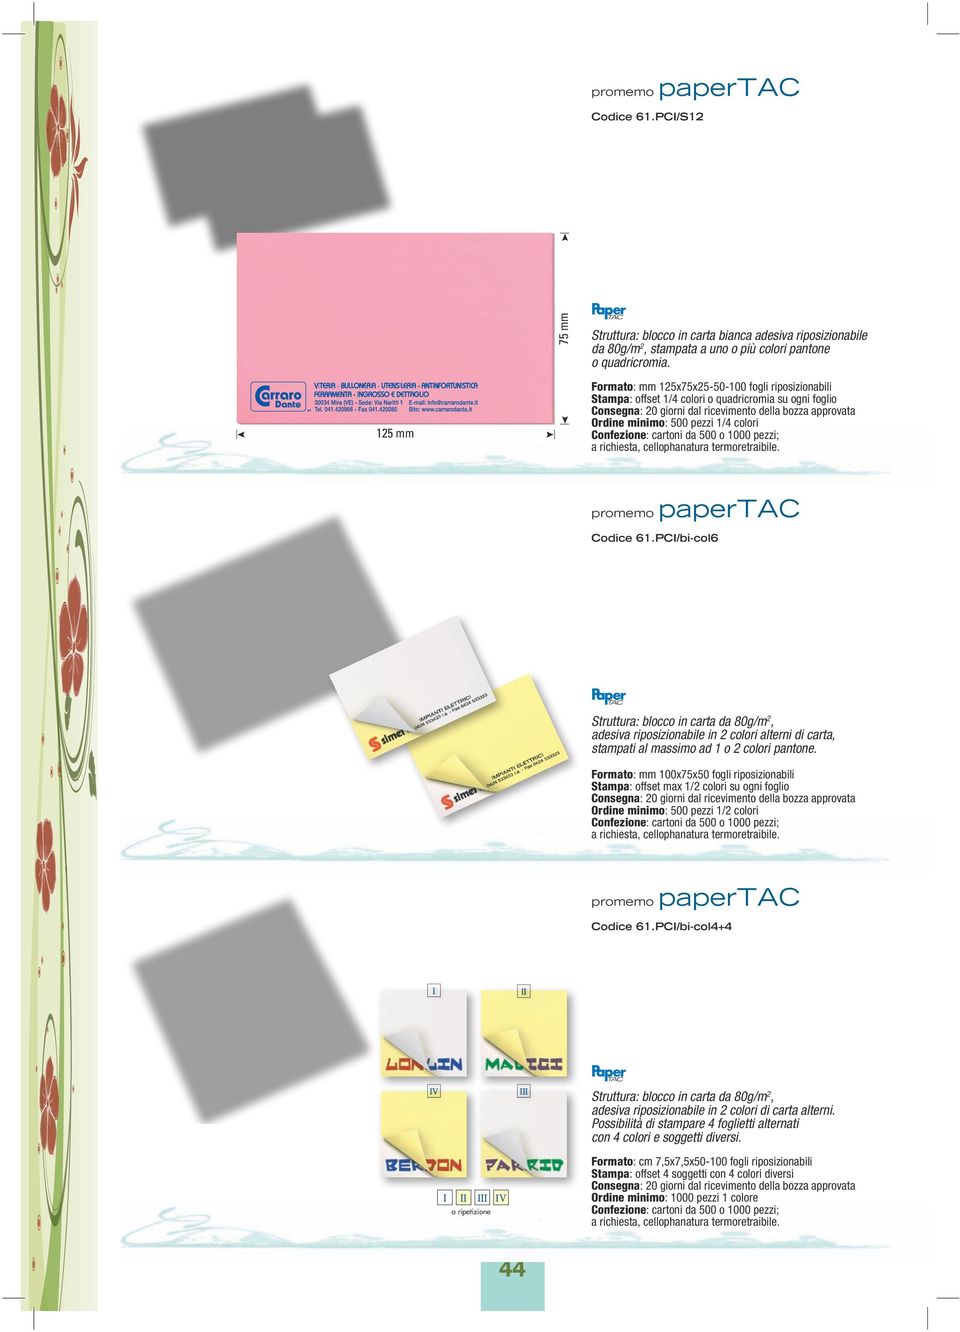 PCI/bi-col6 Struttura: blocco in carta da 80g/m 2, adesiva riposizionabile in 2 colori alterni di carta, stampati al massimo ad 1 o 2 colori pantone.